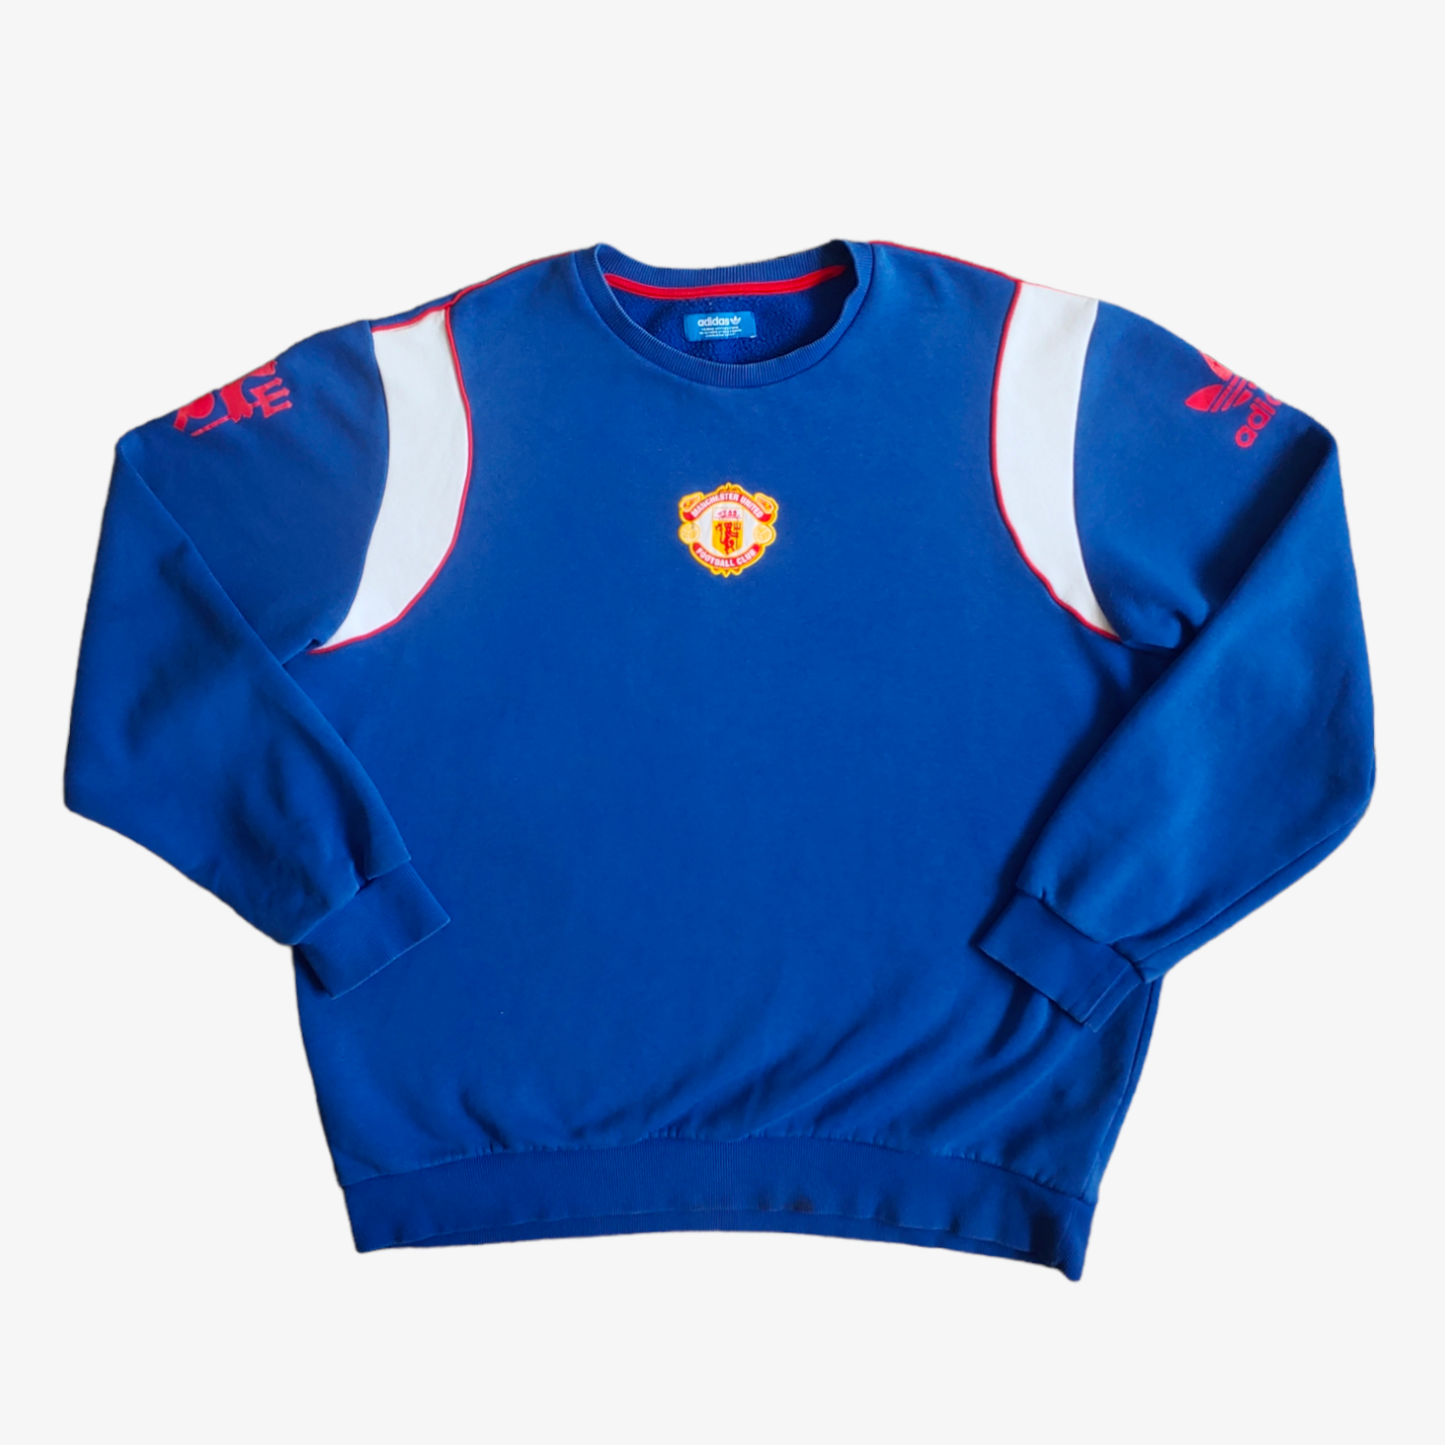 Retro Adidas Originals Manchester United Football Club Blue Crewneck Sweatshirt - Casspios Dream